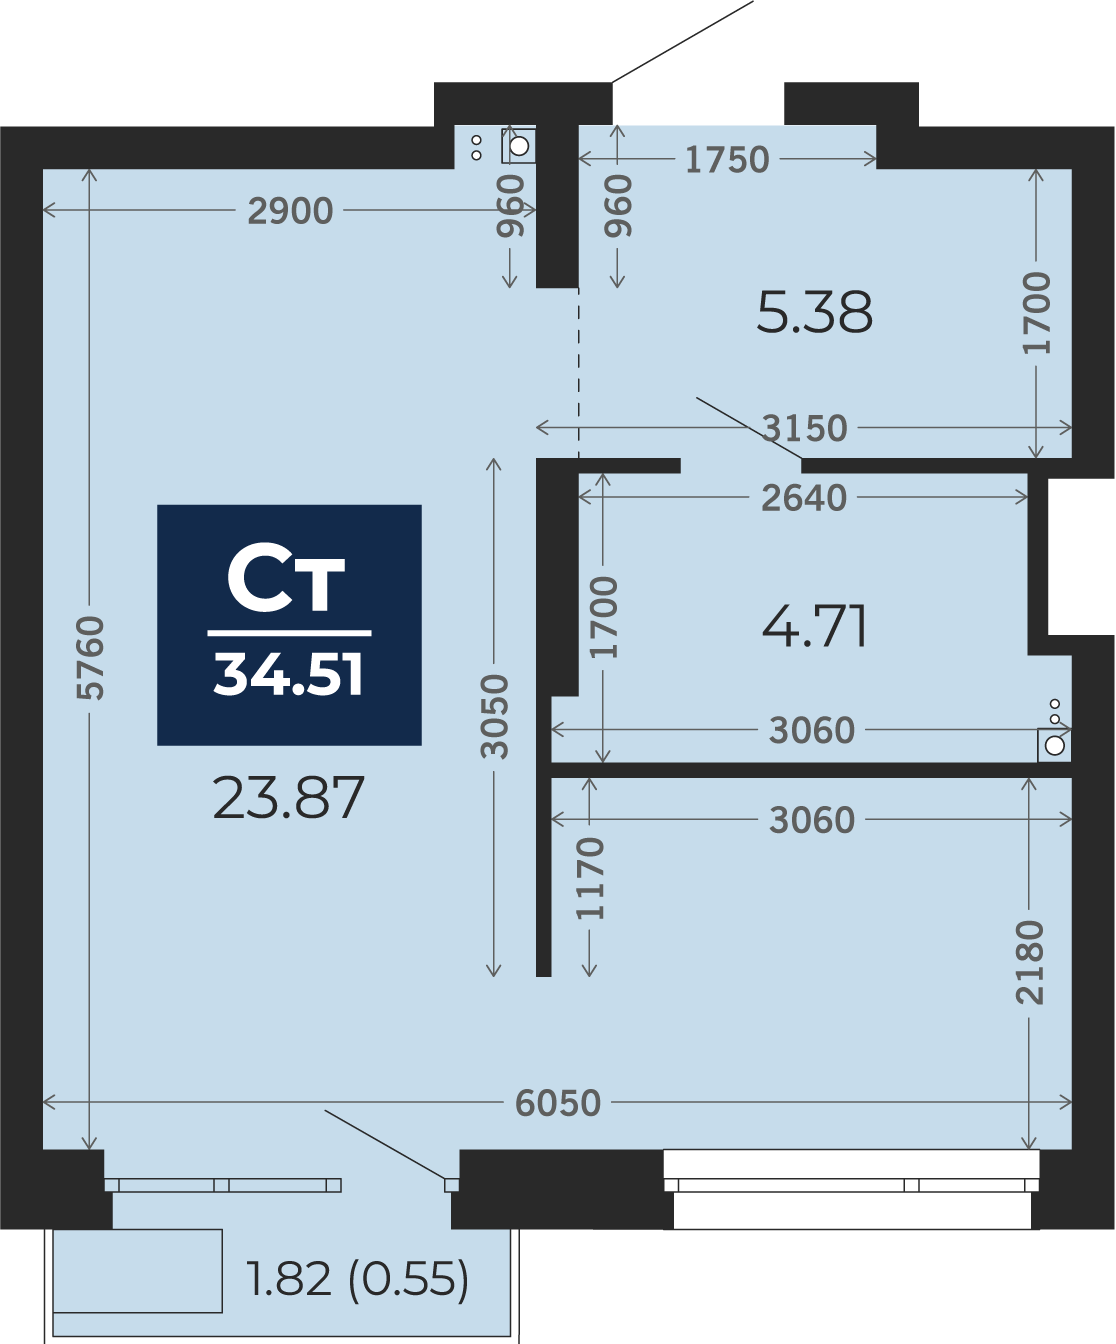 Квартира № 367, Студия, 34.51 кв. м, 8 этаж